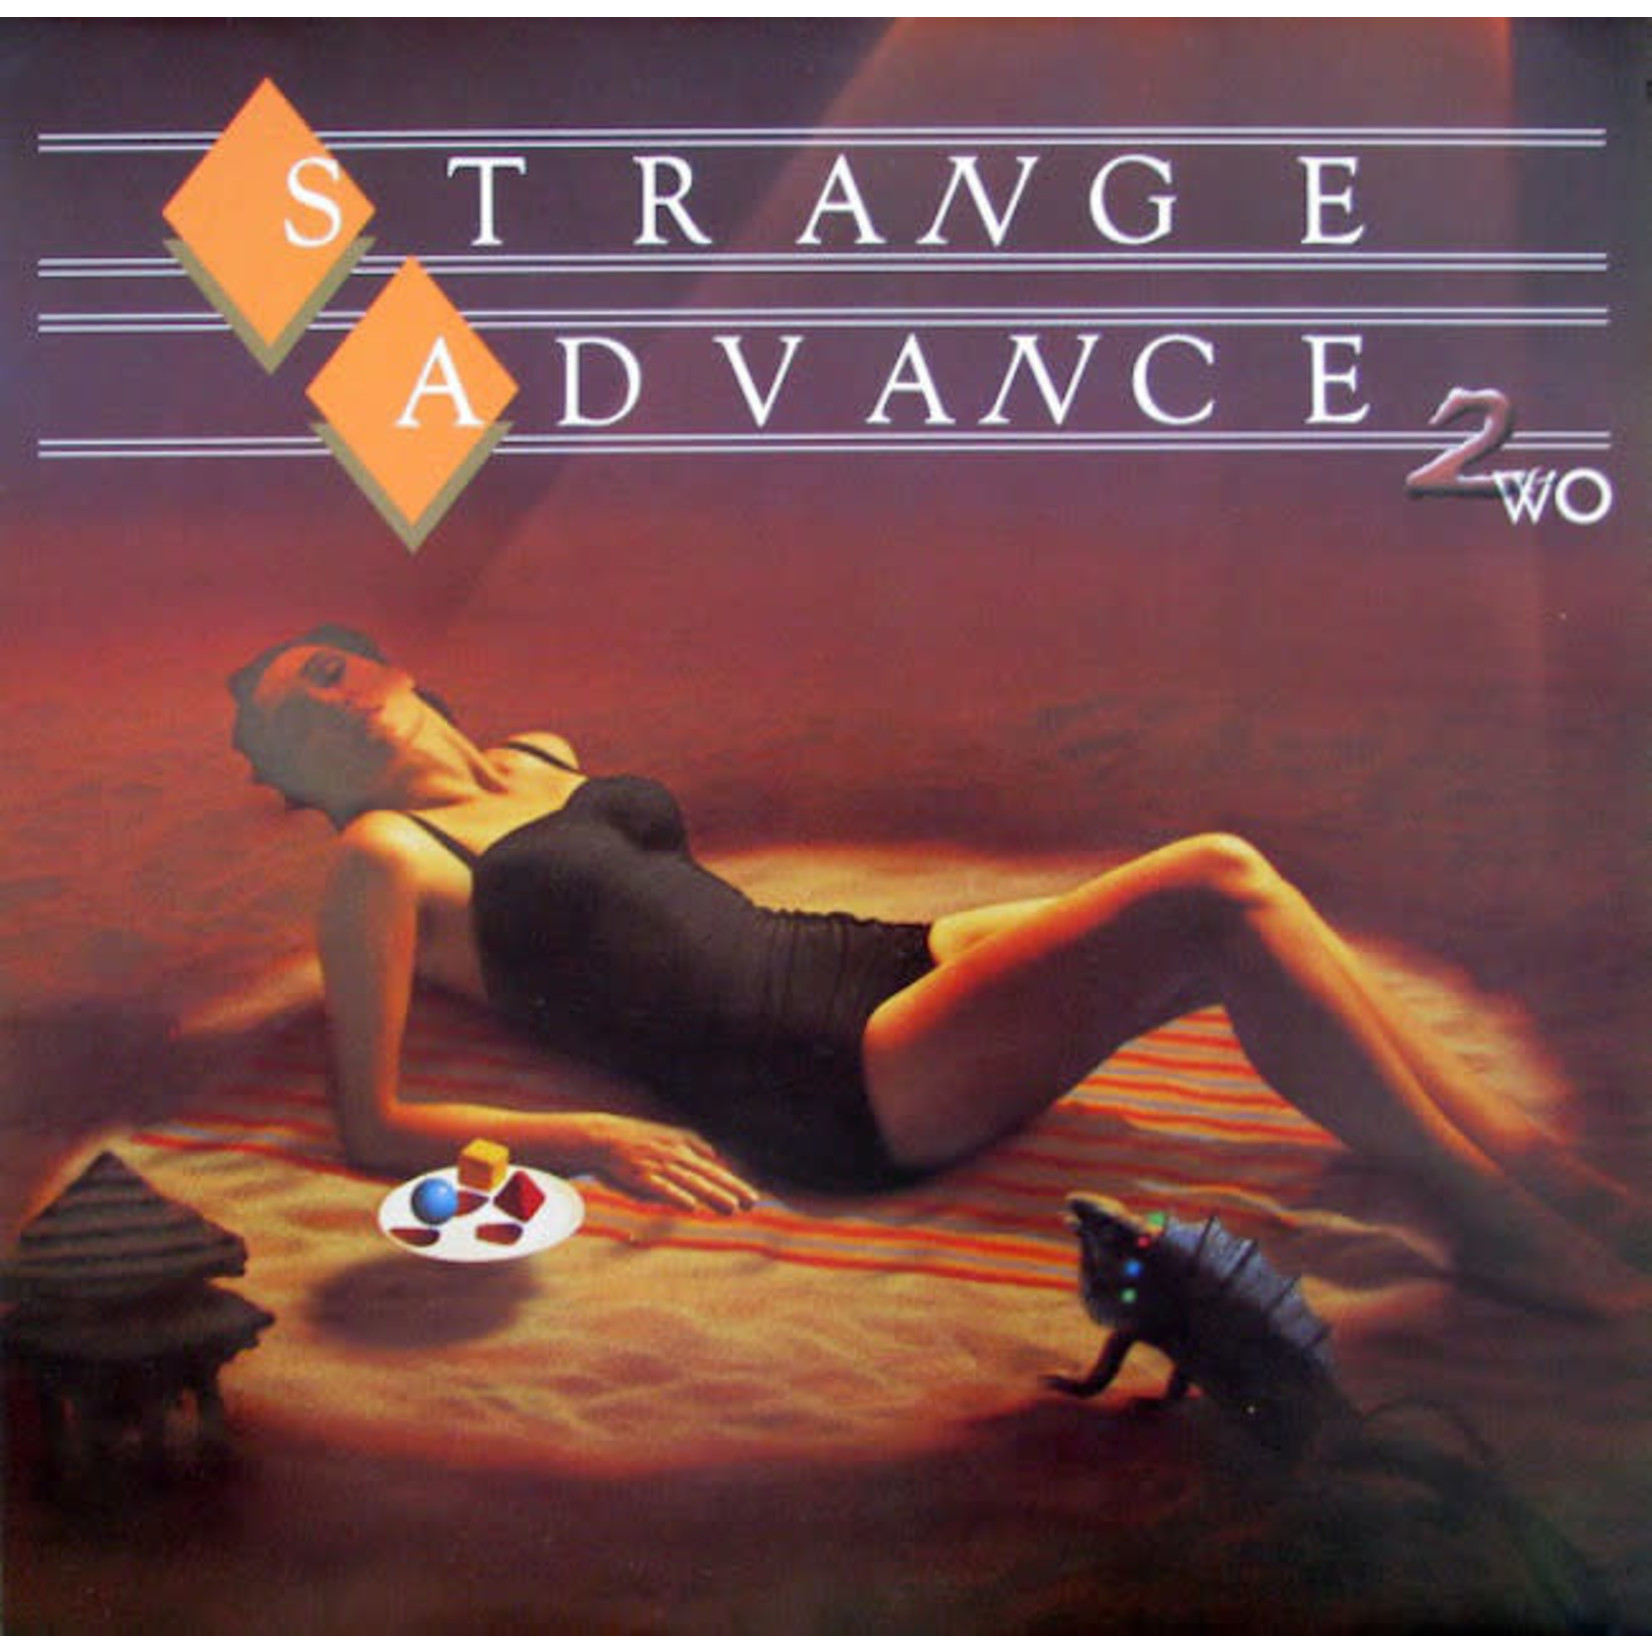 [Vintage] Strange Advance - 2WO